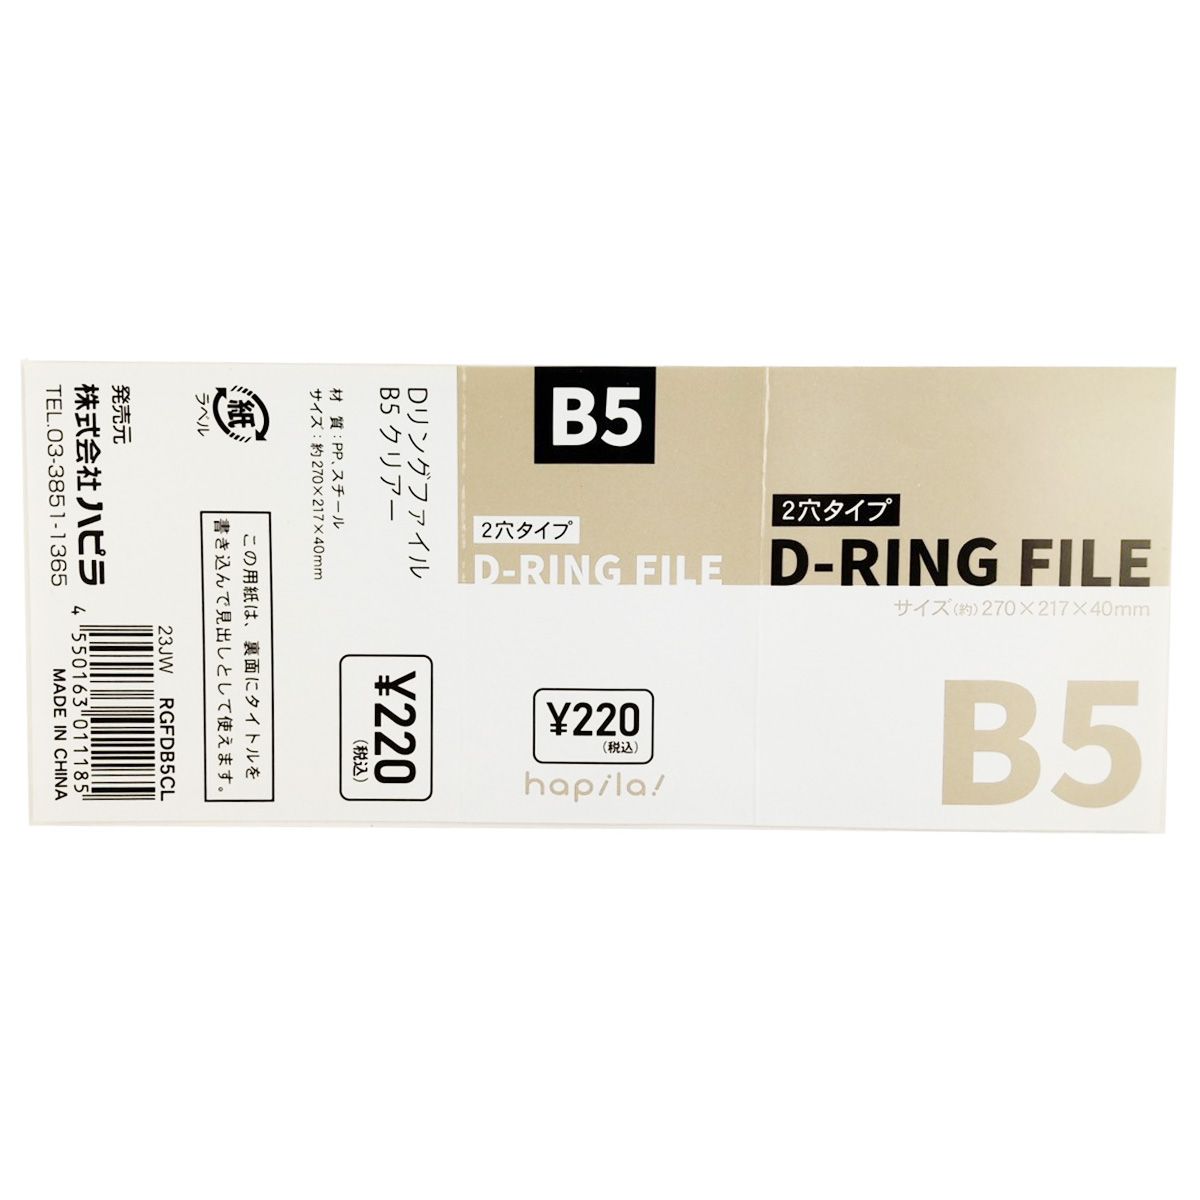 バインダー リング式ファイル D型リングファイル Dリングファイル B5 クリア 341297